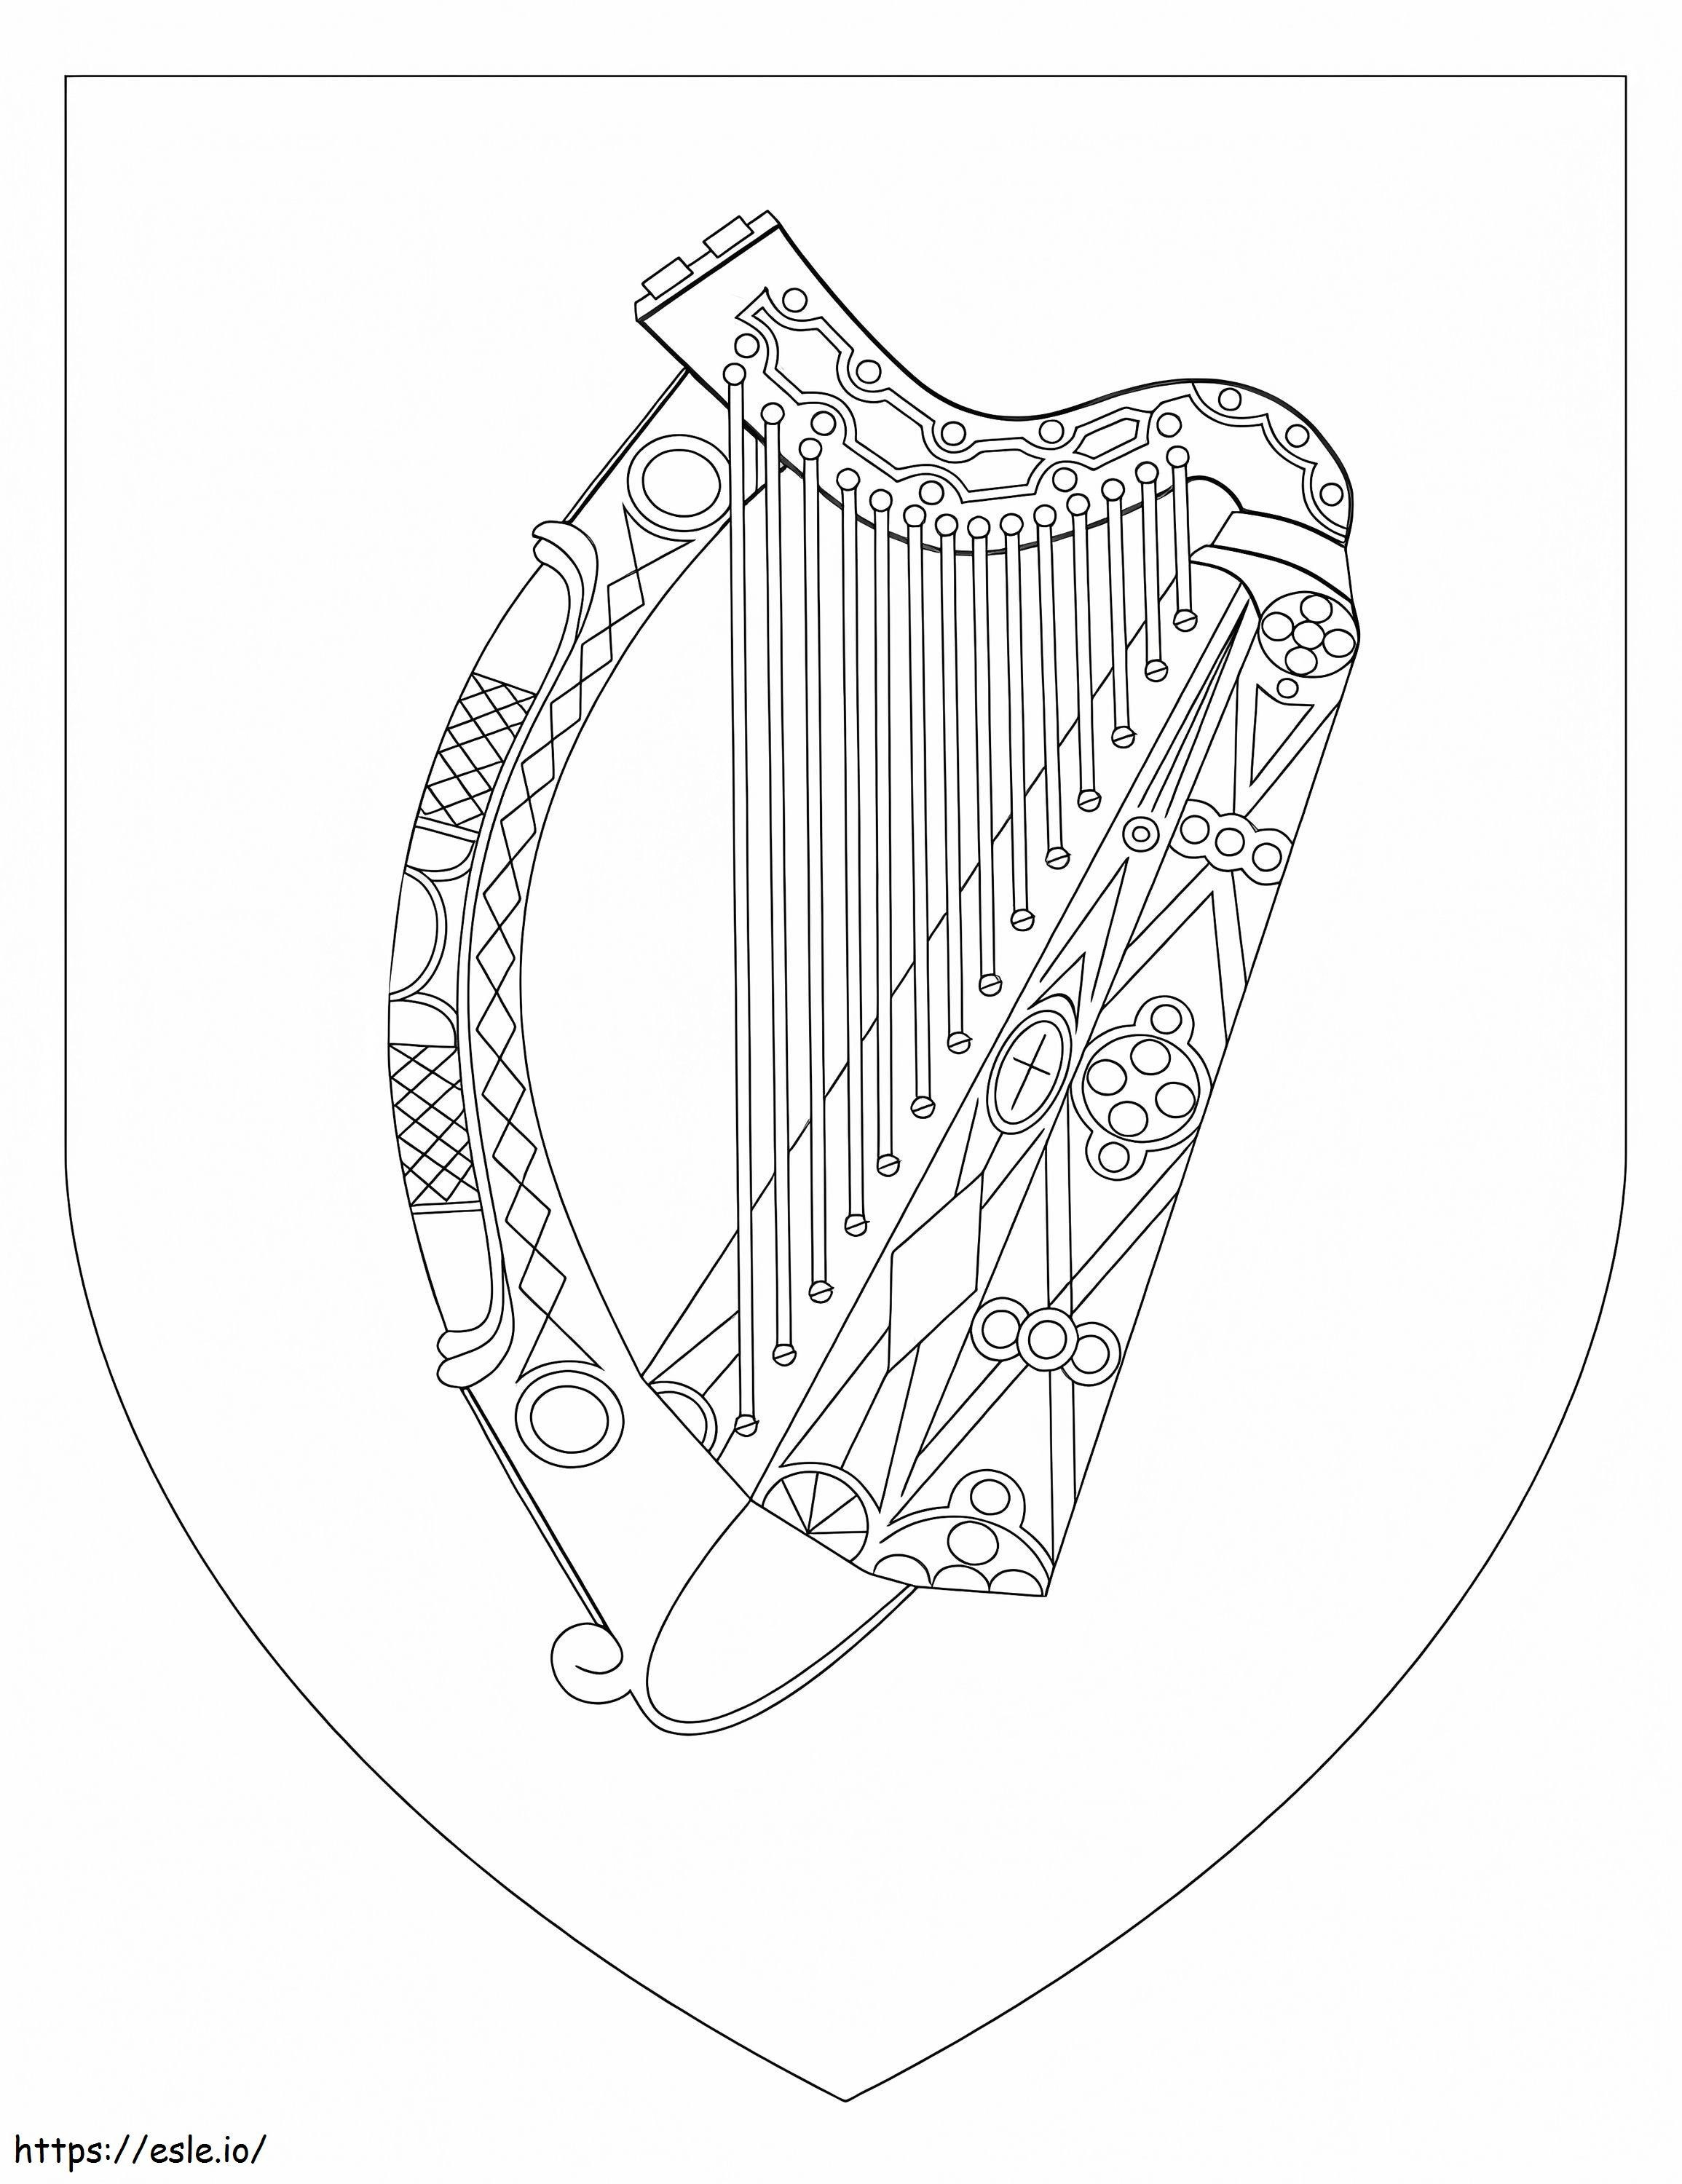 Brasão de armas da Irlanda para colorir